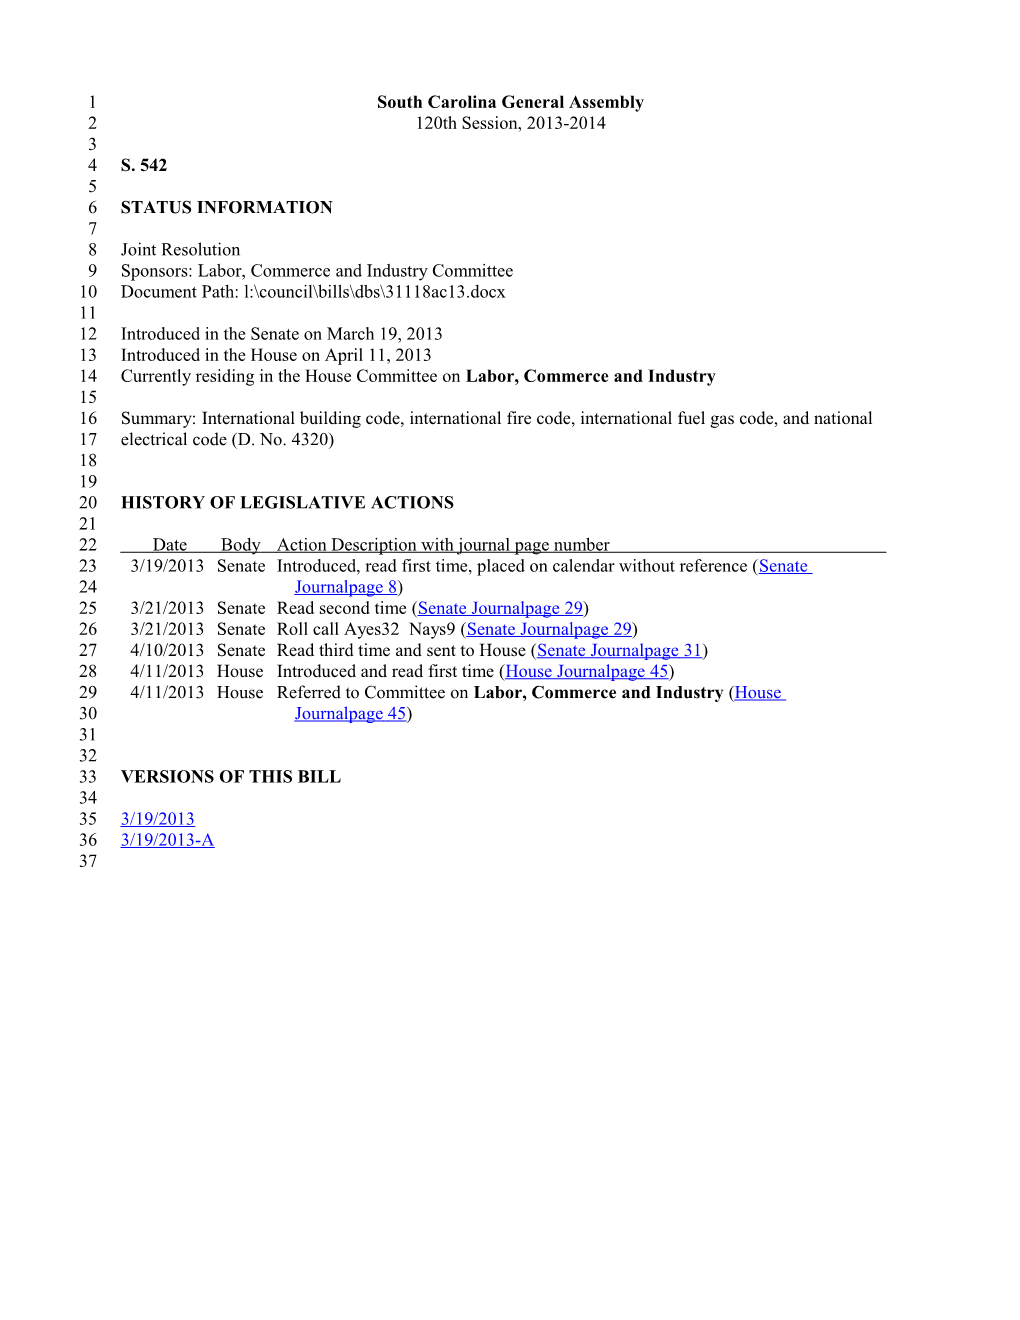 2013-2014 Bill 542: International Building Code, International Fire Code, International